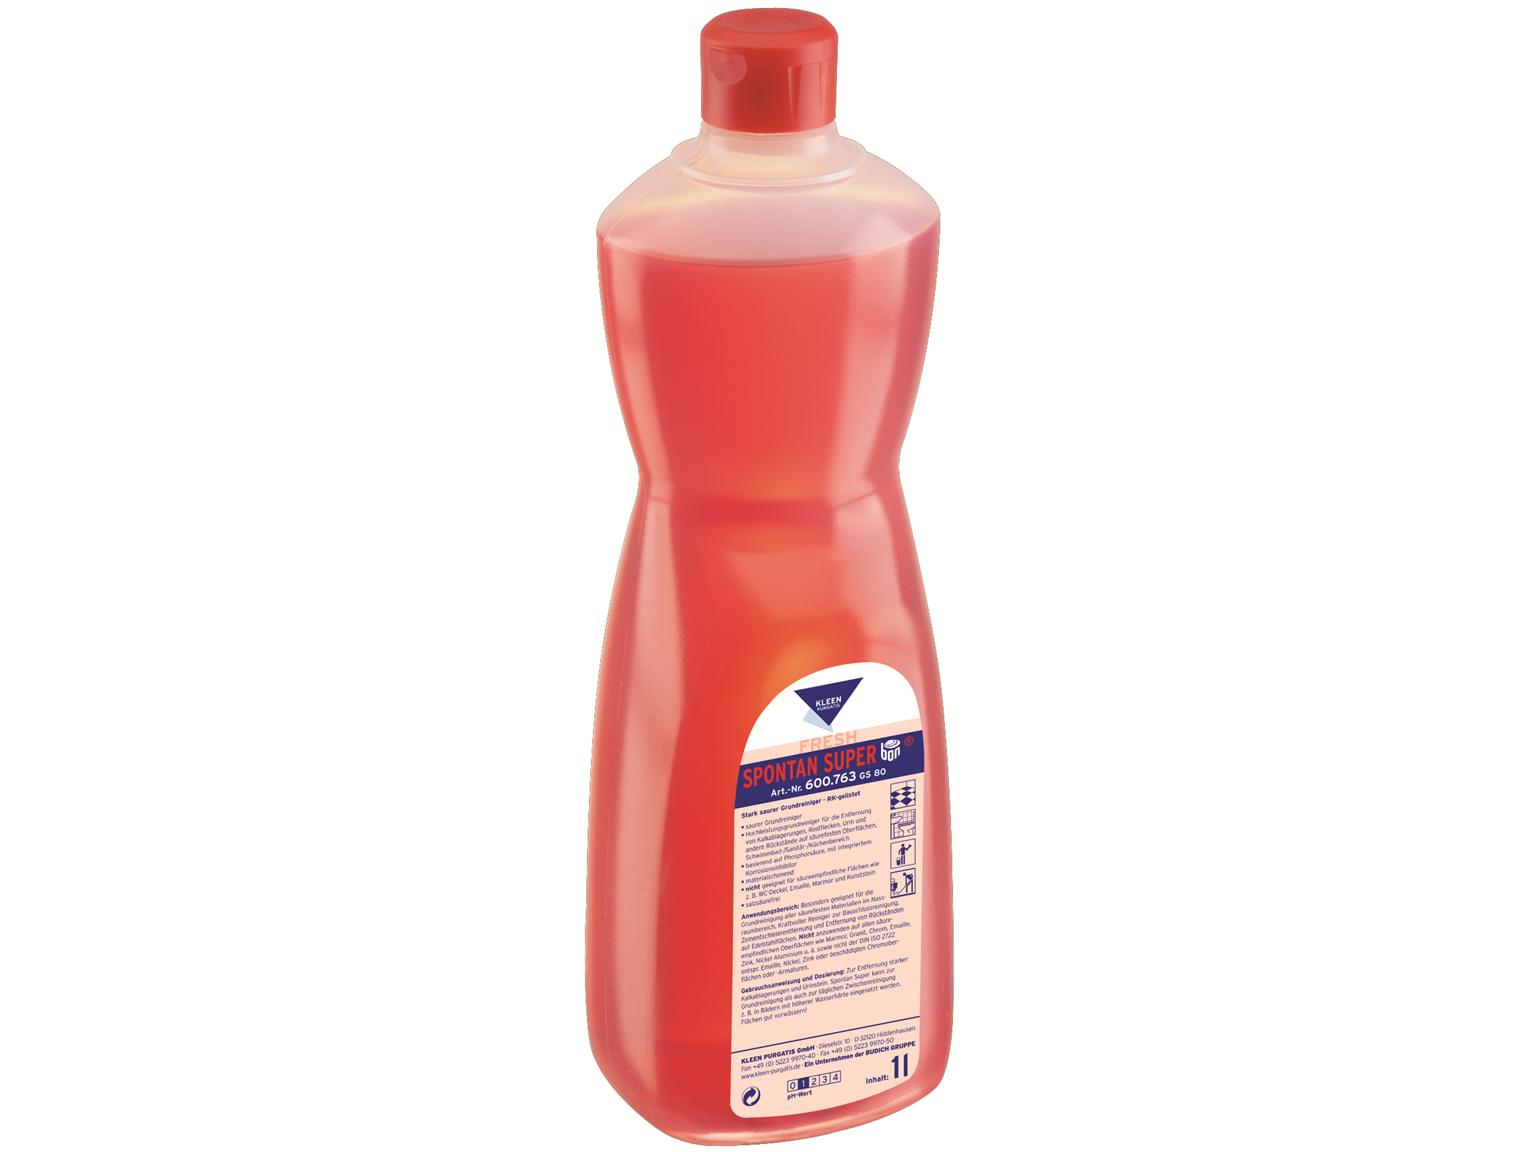 REINIGUNGSMITTEL KLEEN PURGATIS  Spontan Super, 1 Liter Flasche